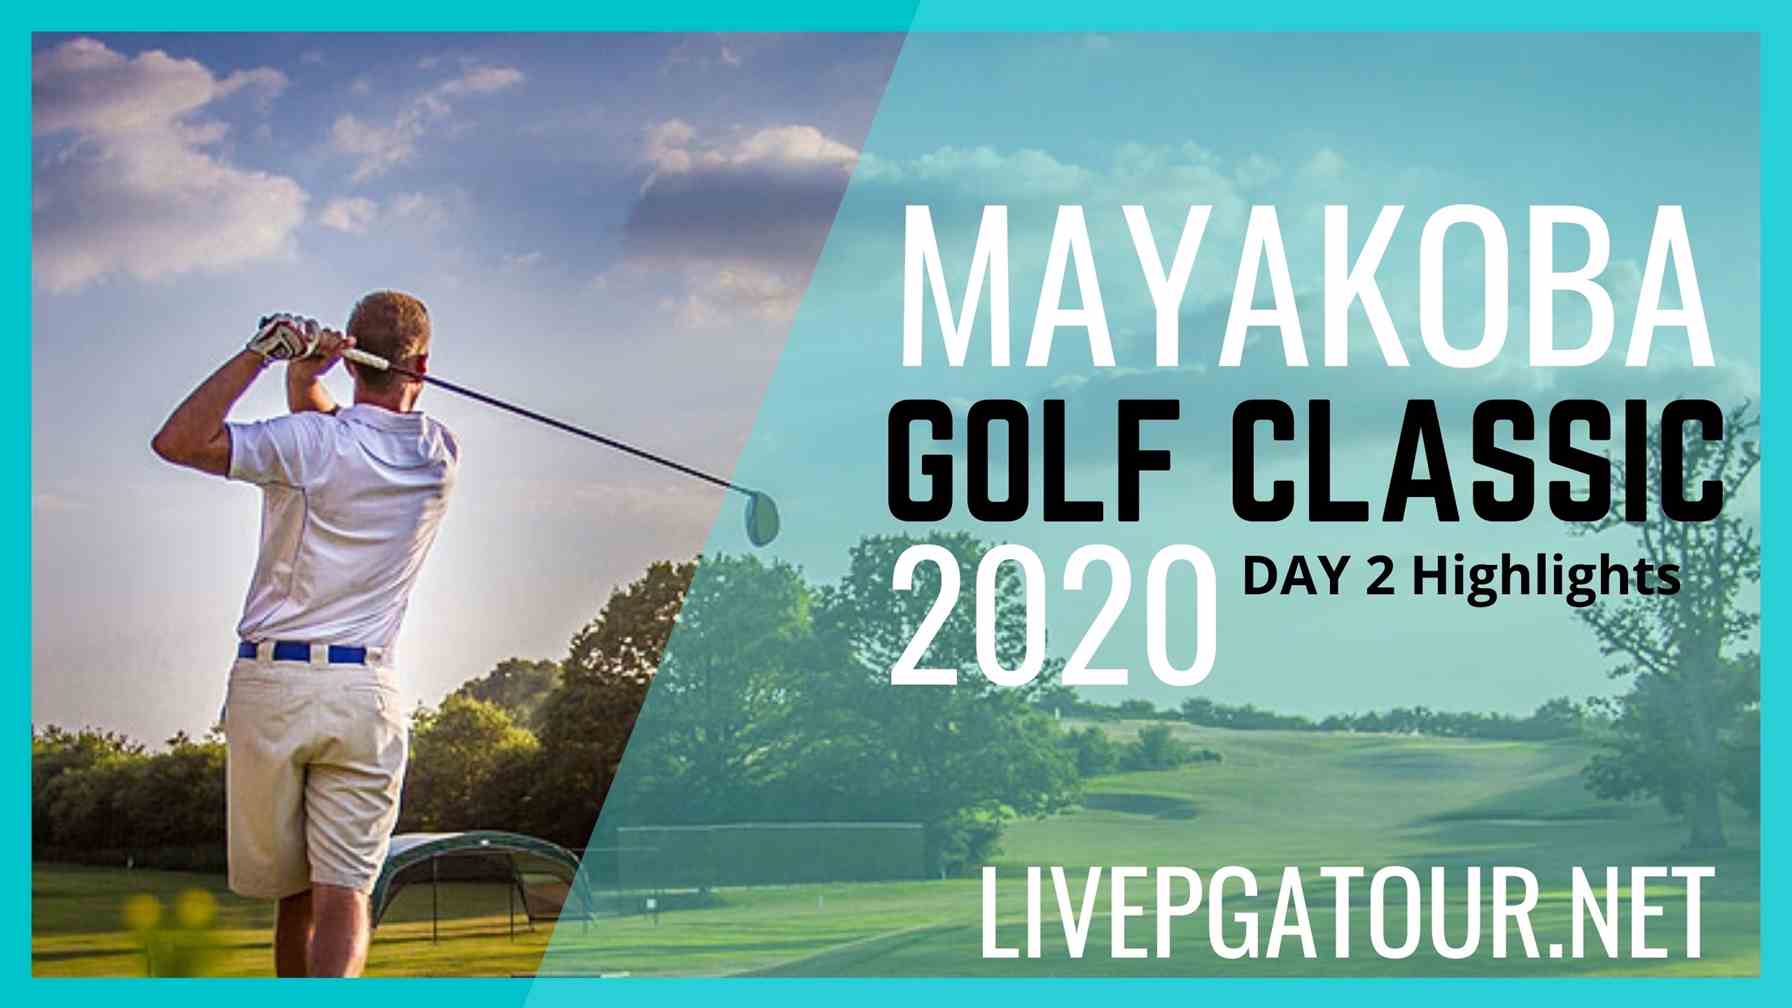 Mayakoba Golf Classic PGA Tour Day 2 Highlights 2020